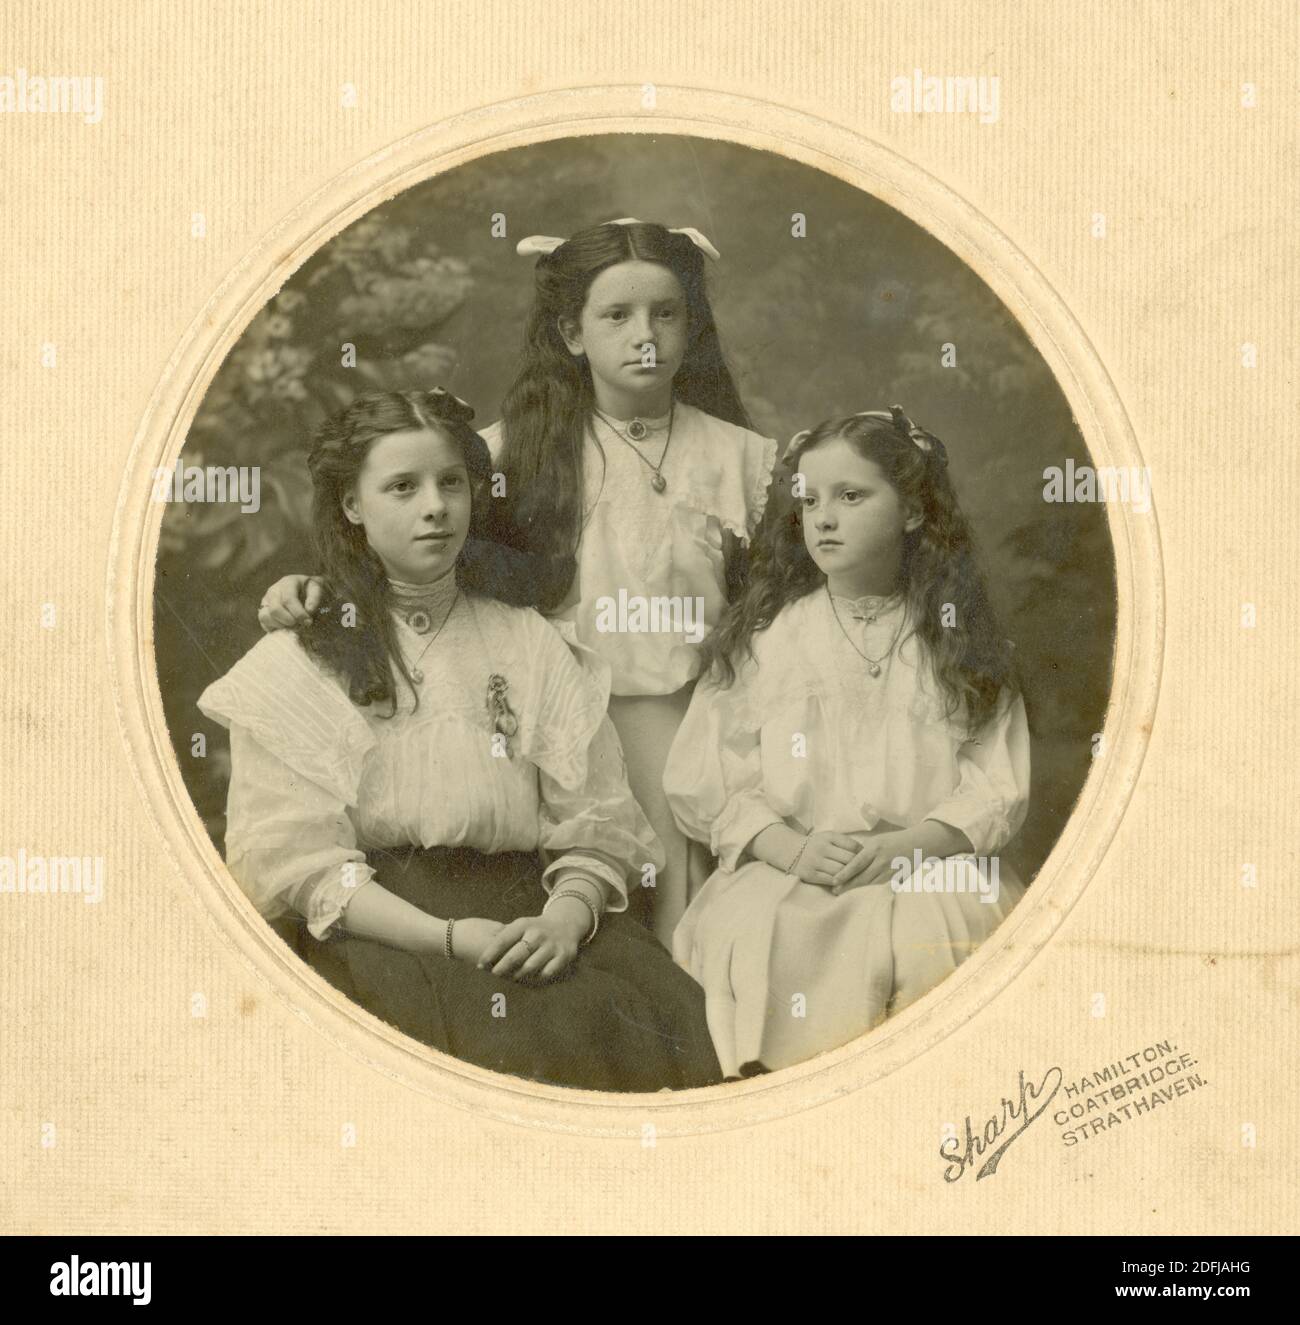 Original Edwardian montierte Fotografie von 2 Schwestern und einem Cousin, im Teenageralter, Ruby, Peggy und Dora, um 1905, Hamilton bei Glasgow, South Lanarkshire, Schottland, Großbritannien Stockfoto